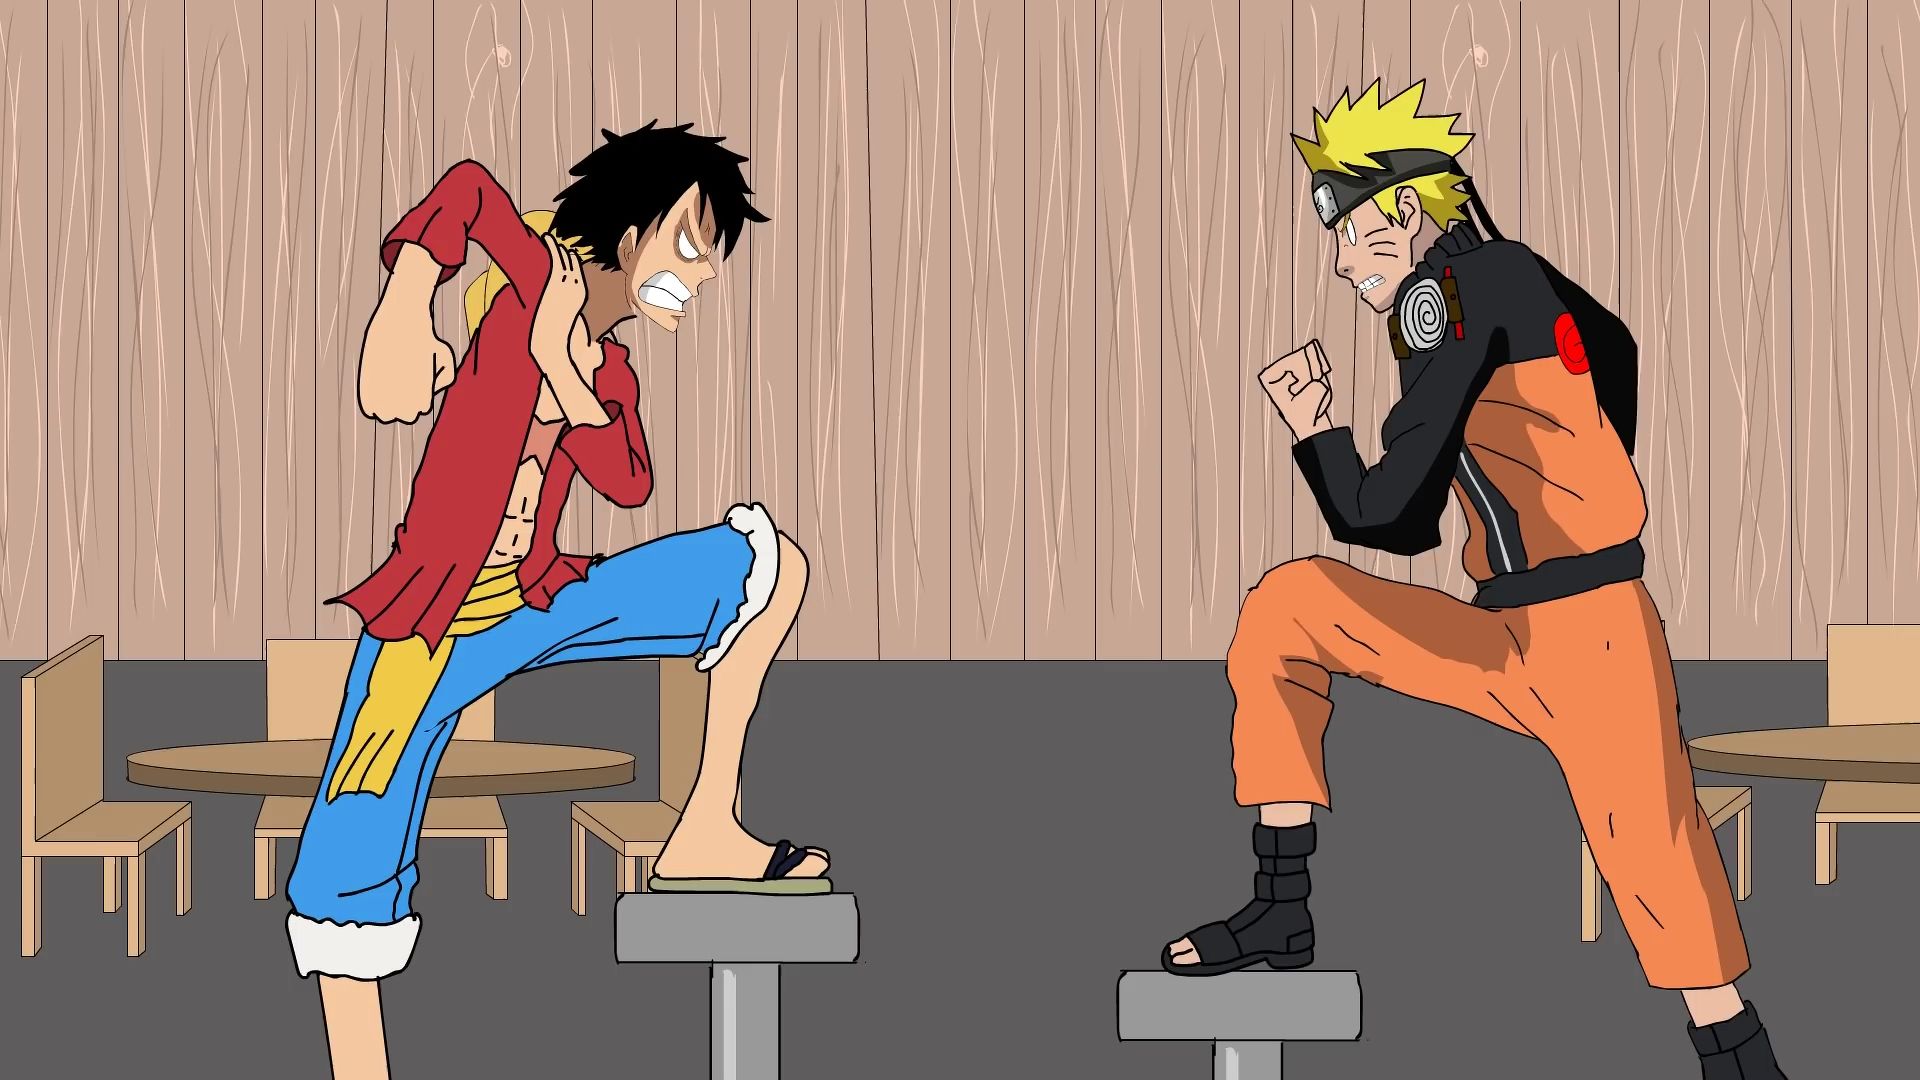 Luffy và Naruto gặp nhau - một cuộc hội ngộ đầy thú vị! Hãy xem và cảm nhận cảm giác hồi hộp khi hai nhân vật từ hai thế giới hoạt hình khác nhau đối mặt nhau và có những cuộc trò chơi và giao lưu thú vị.